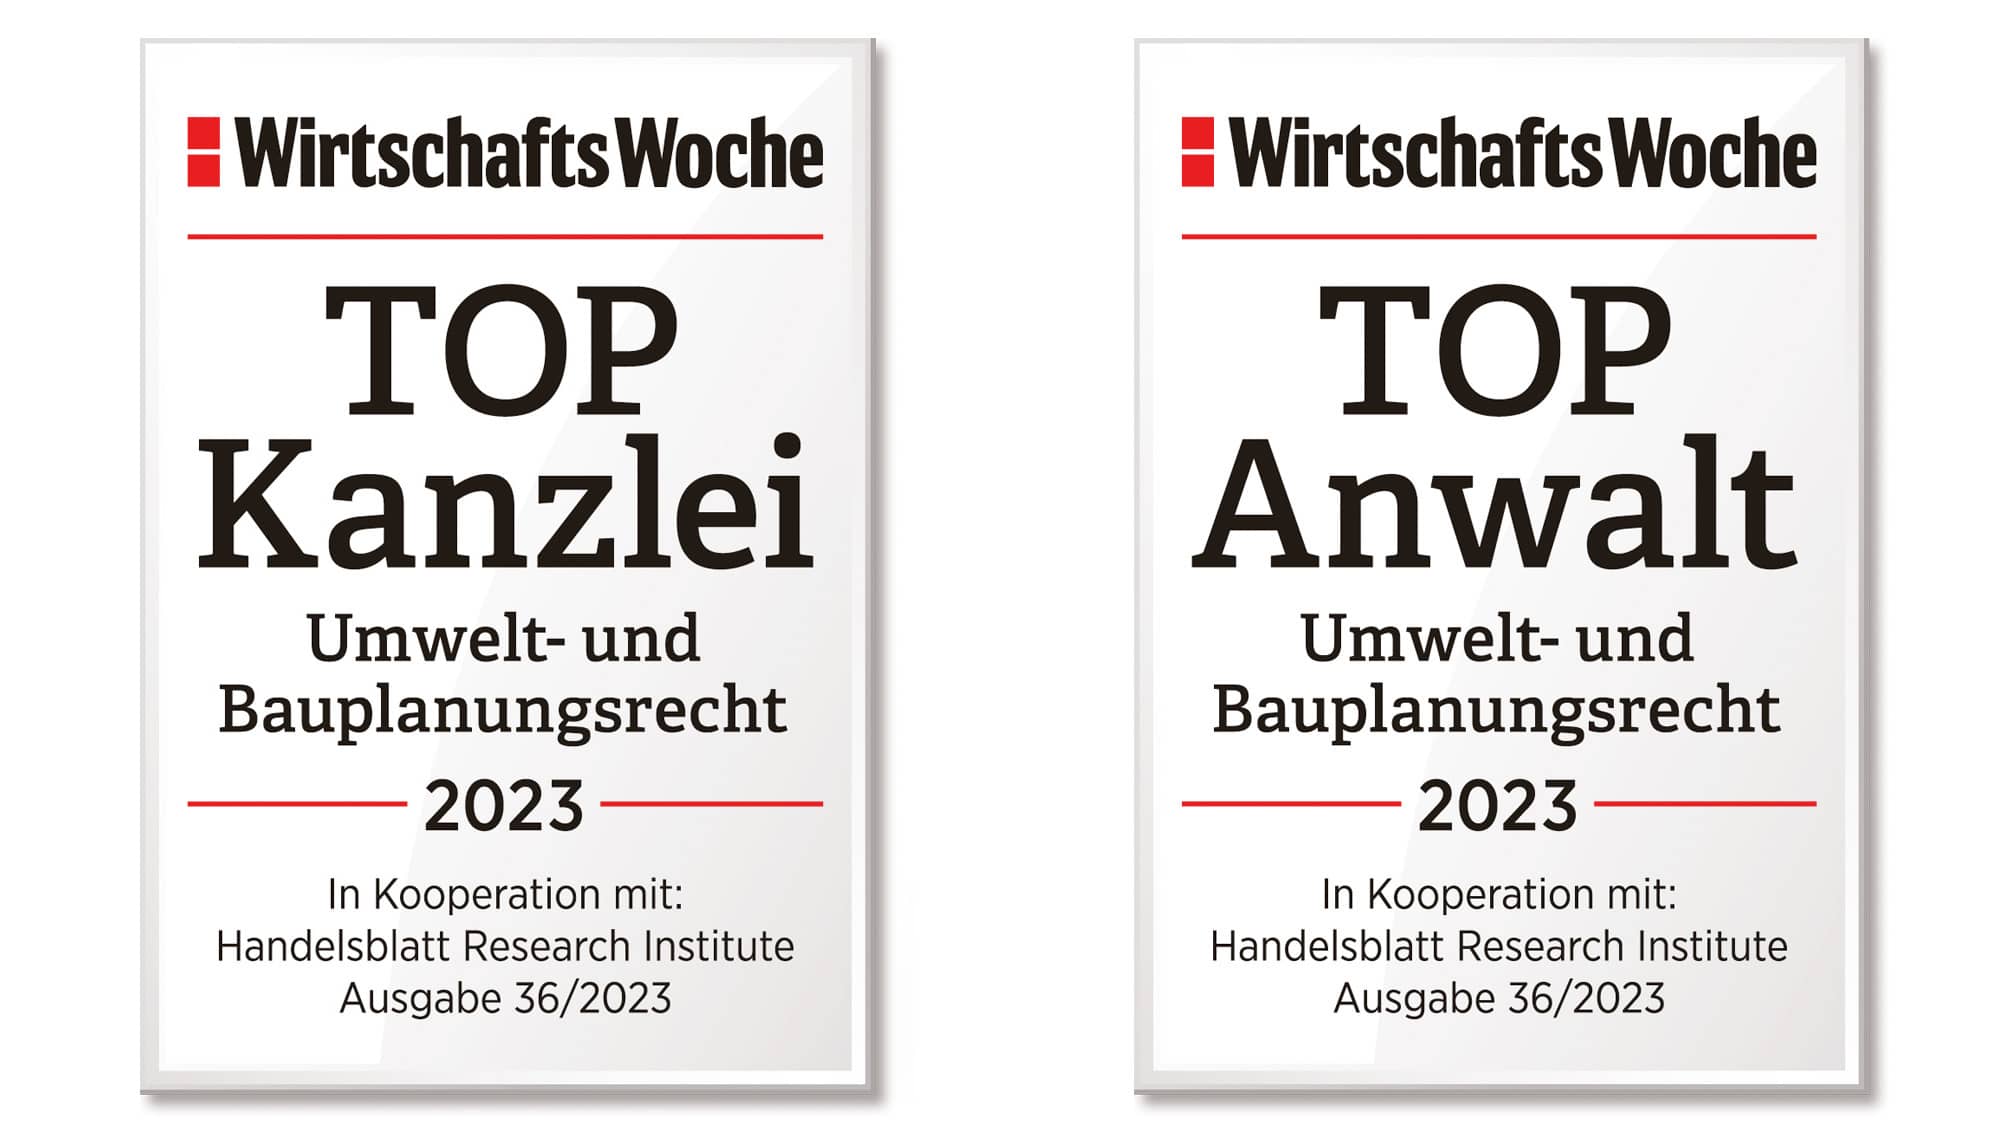 Auszeichnung Wirtschaftswoche TOP Kanzlei 2023 + TOP Anwalt 2023 Kanzlei Pauly Rechtsanwälte Köln